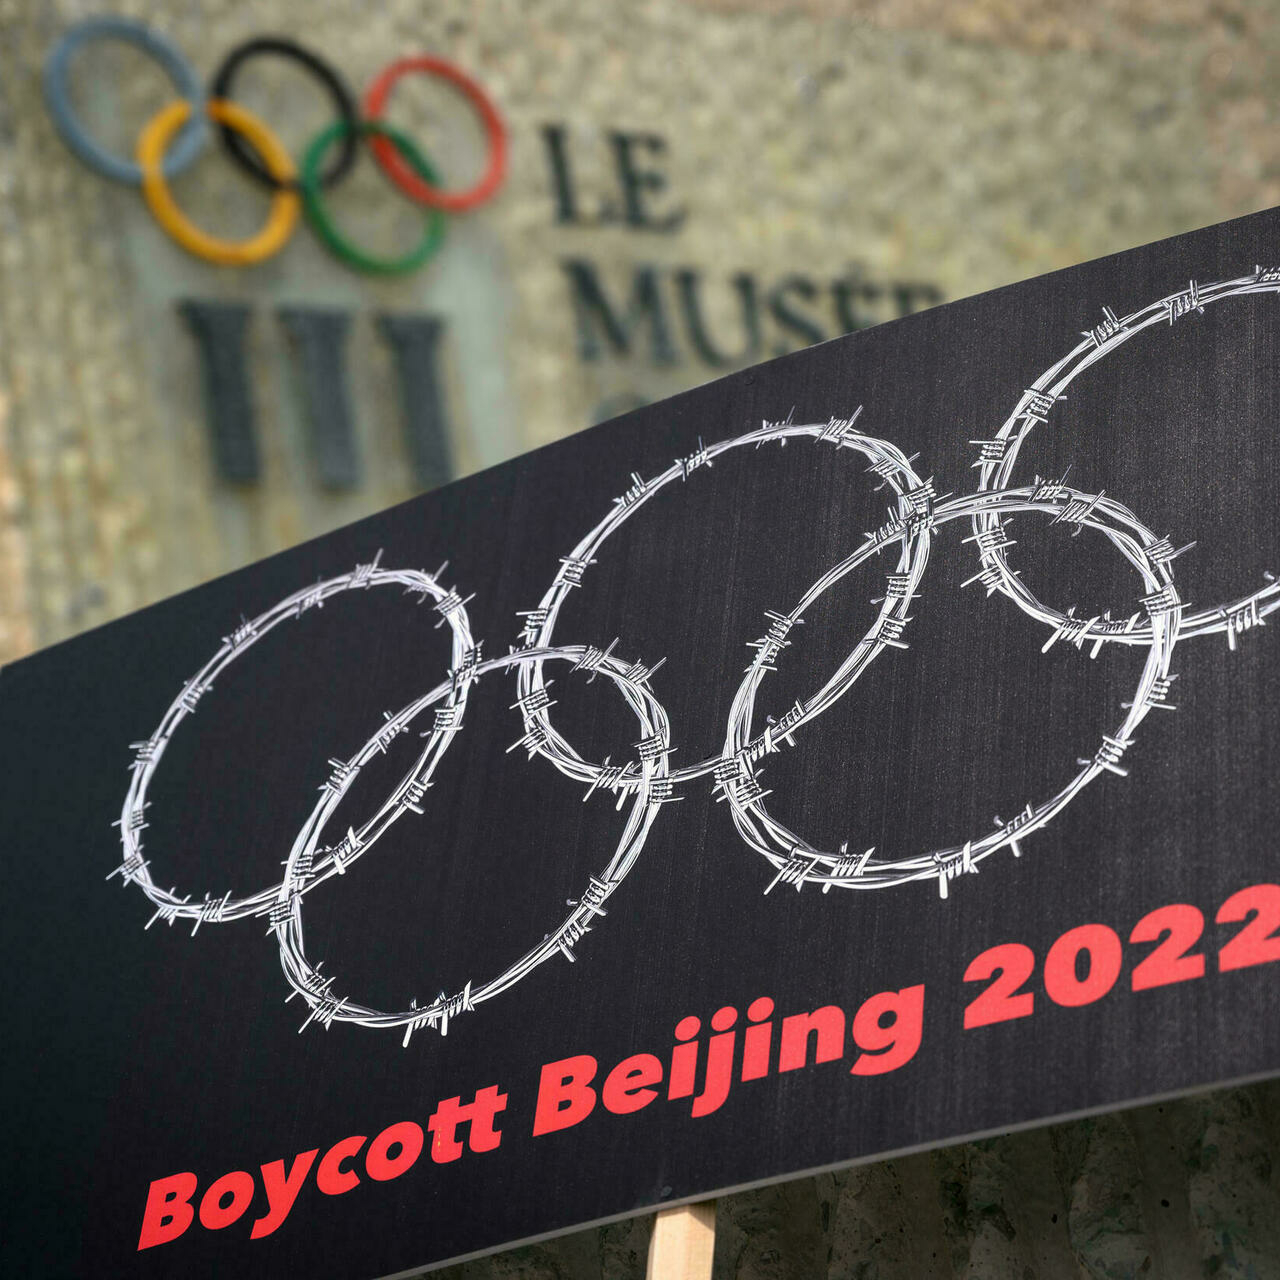 US lawmakers press corporate sponsors to boycott Beijing Winter